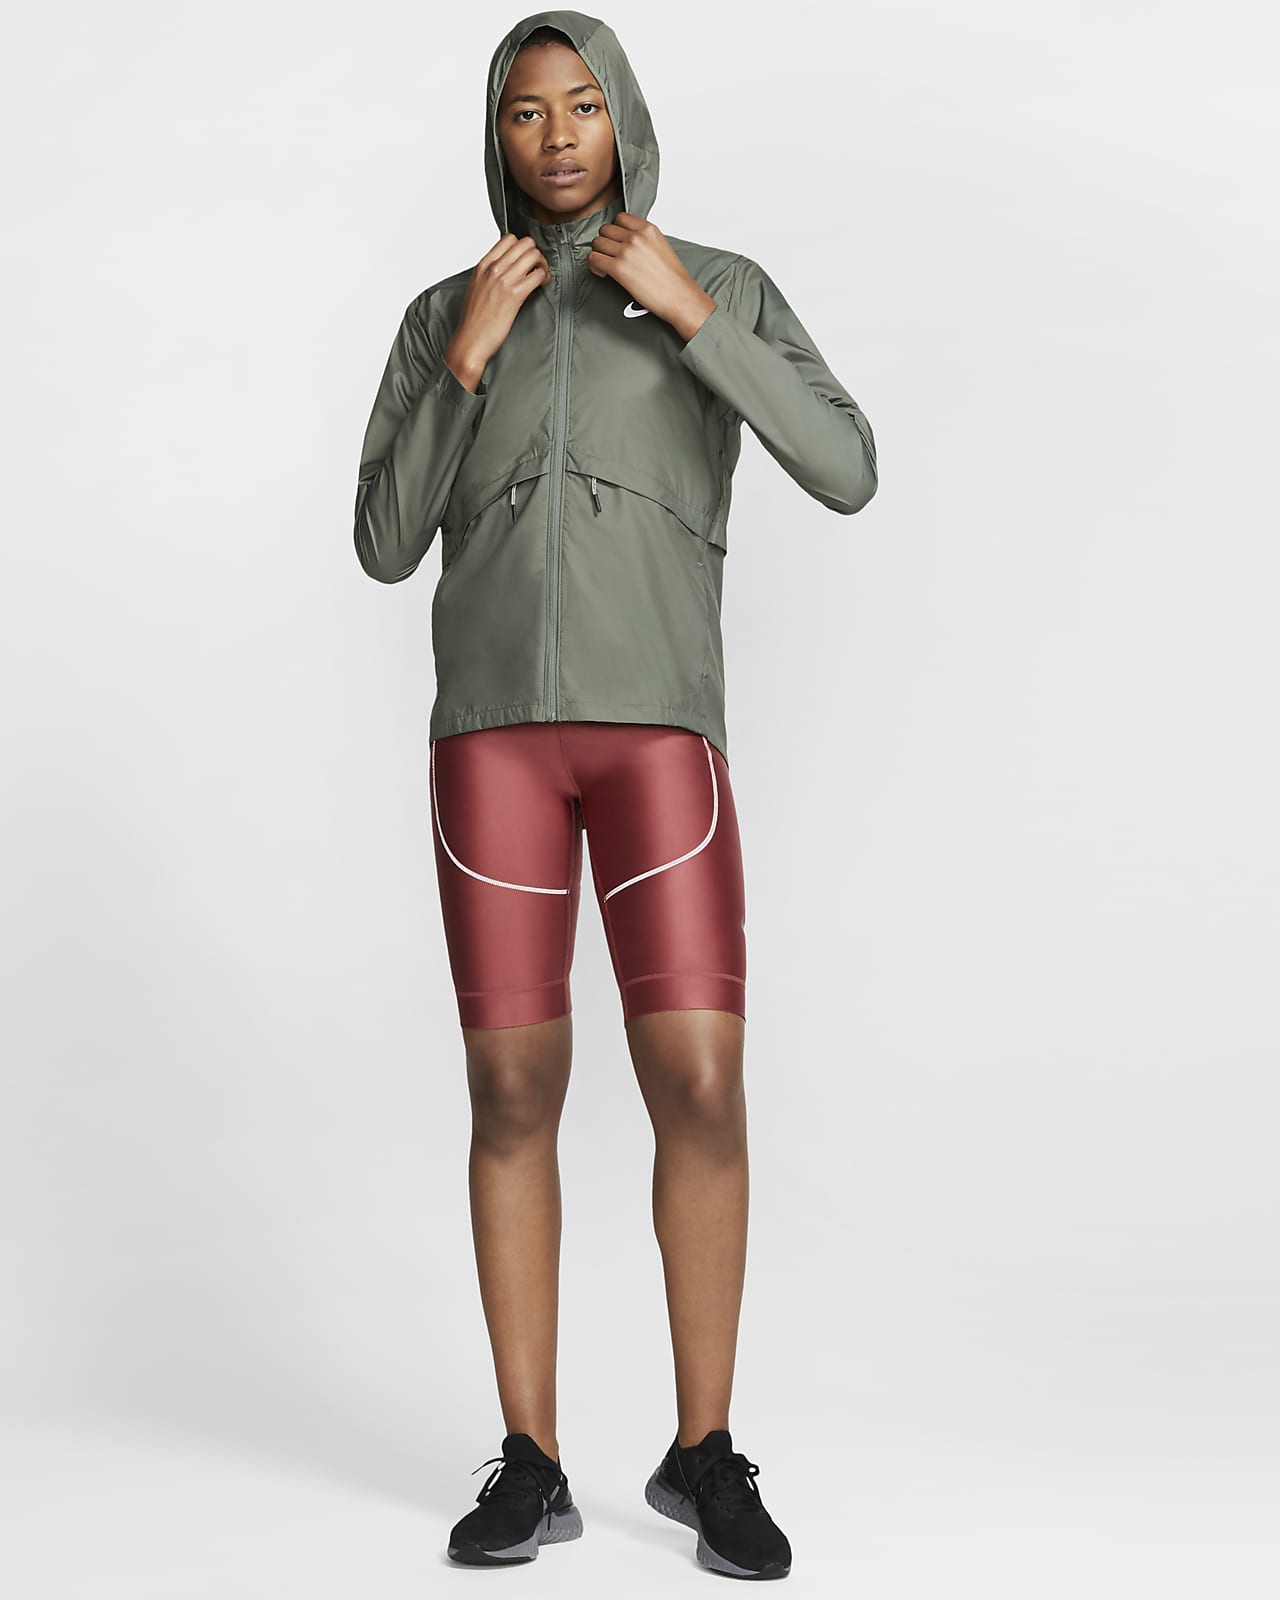 Wildcraft Waterproof Rain Jacket Suit (Beige) (M) : Amazon.in: Clothing &  Accessories